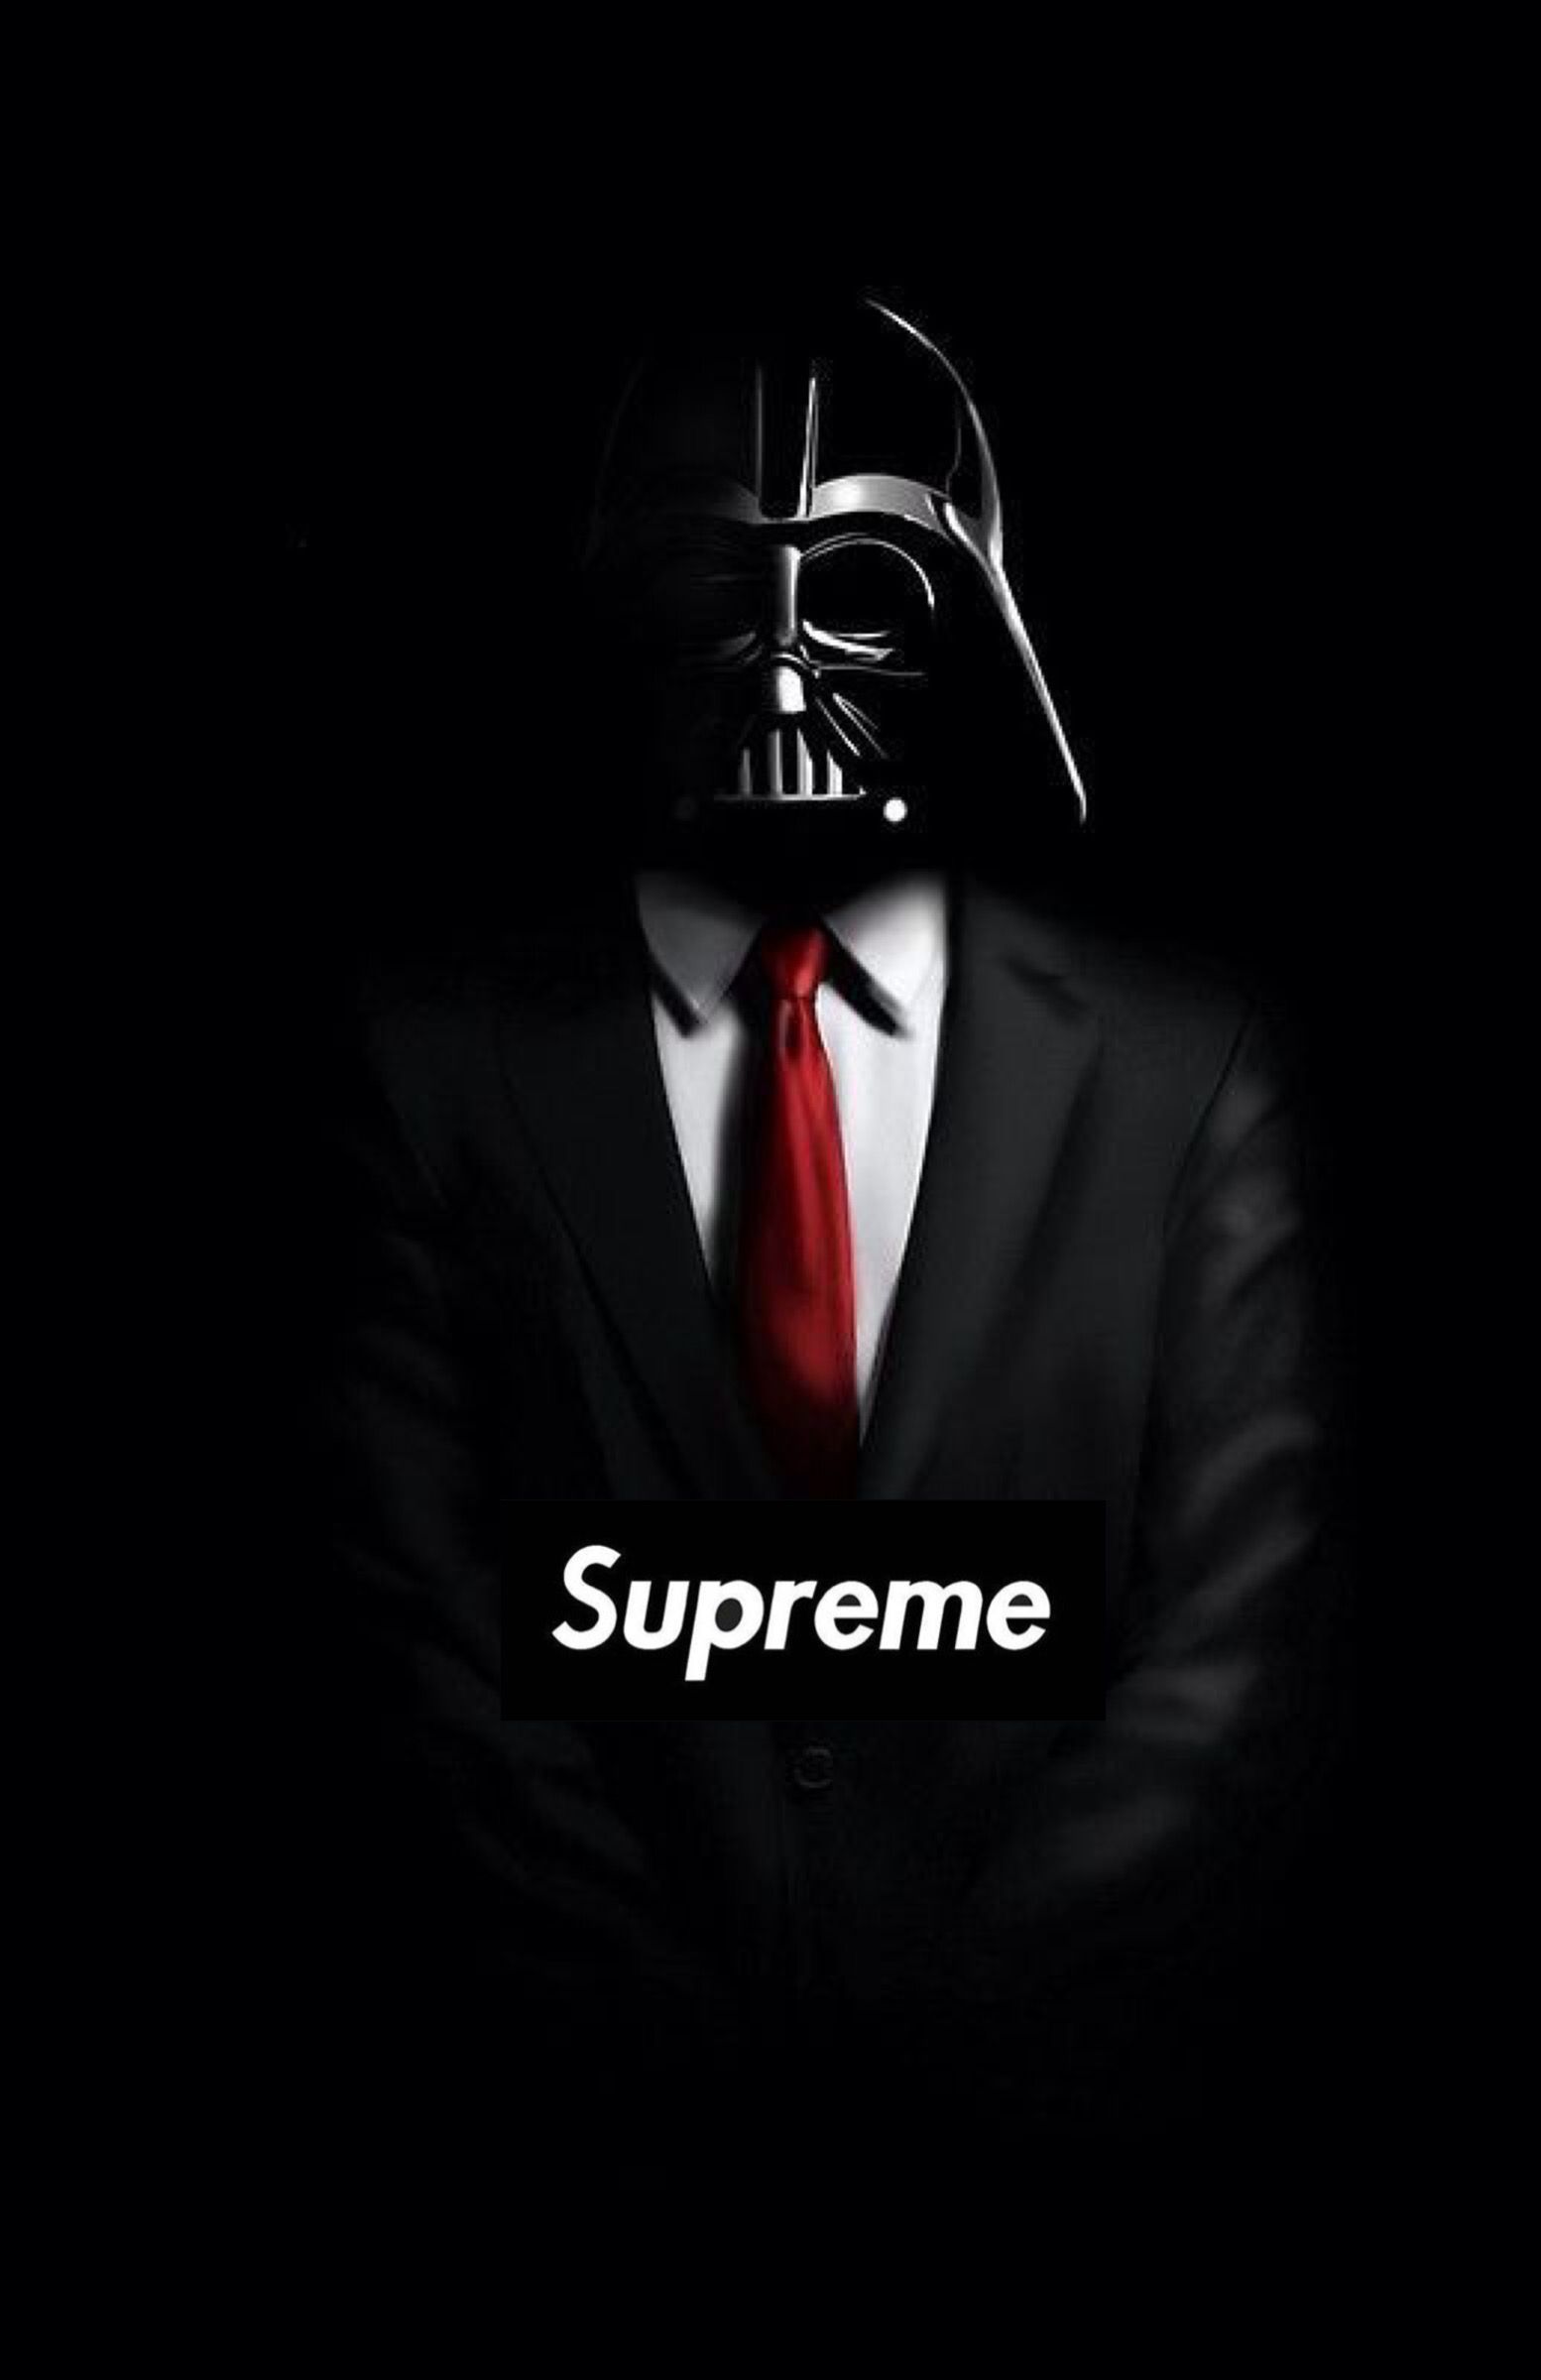 Supreme. Supreme wallpaper, Chill photo, Star wars poster